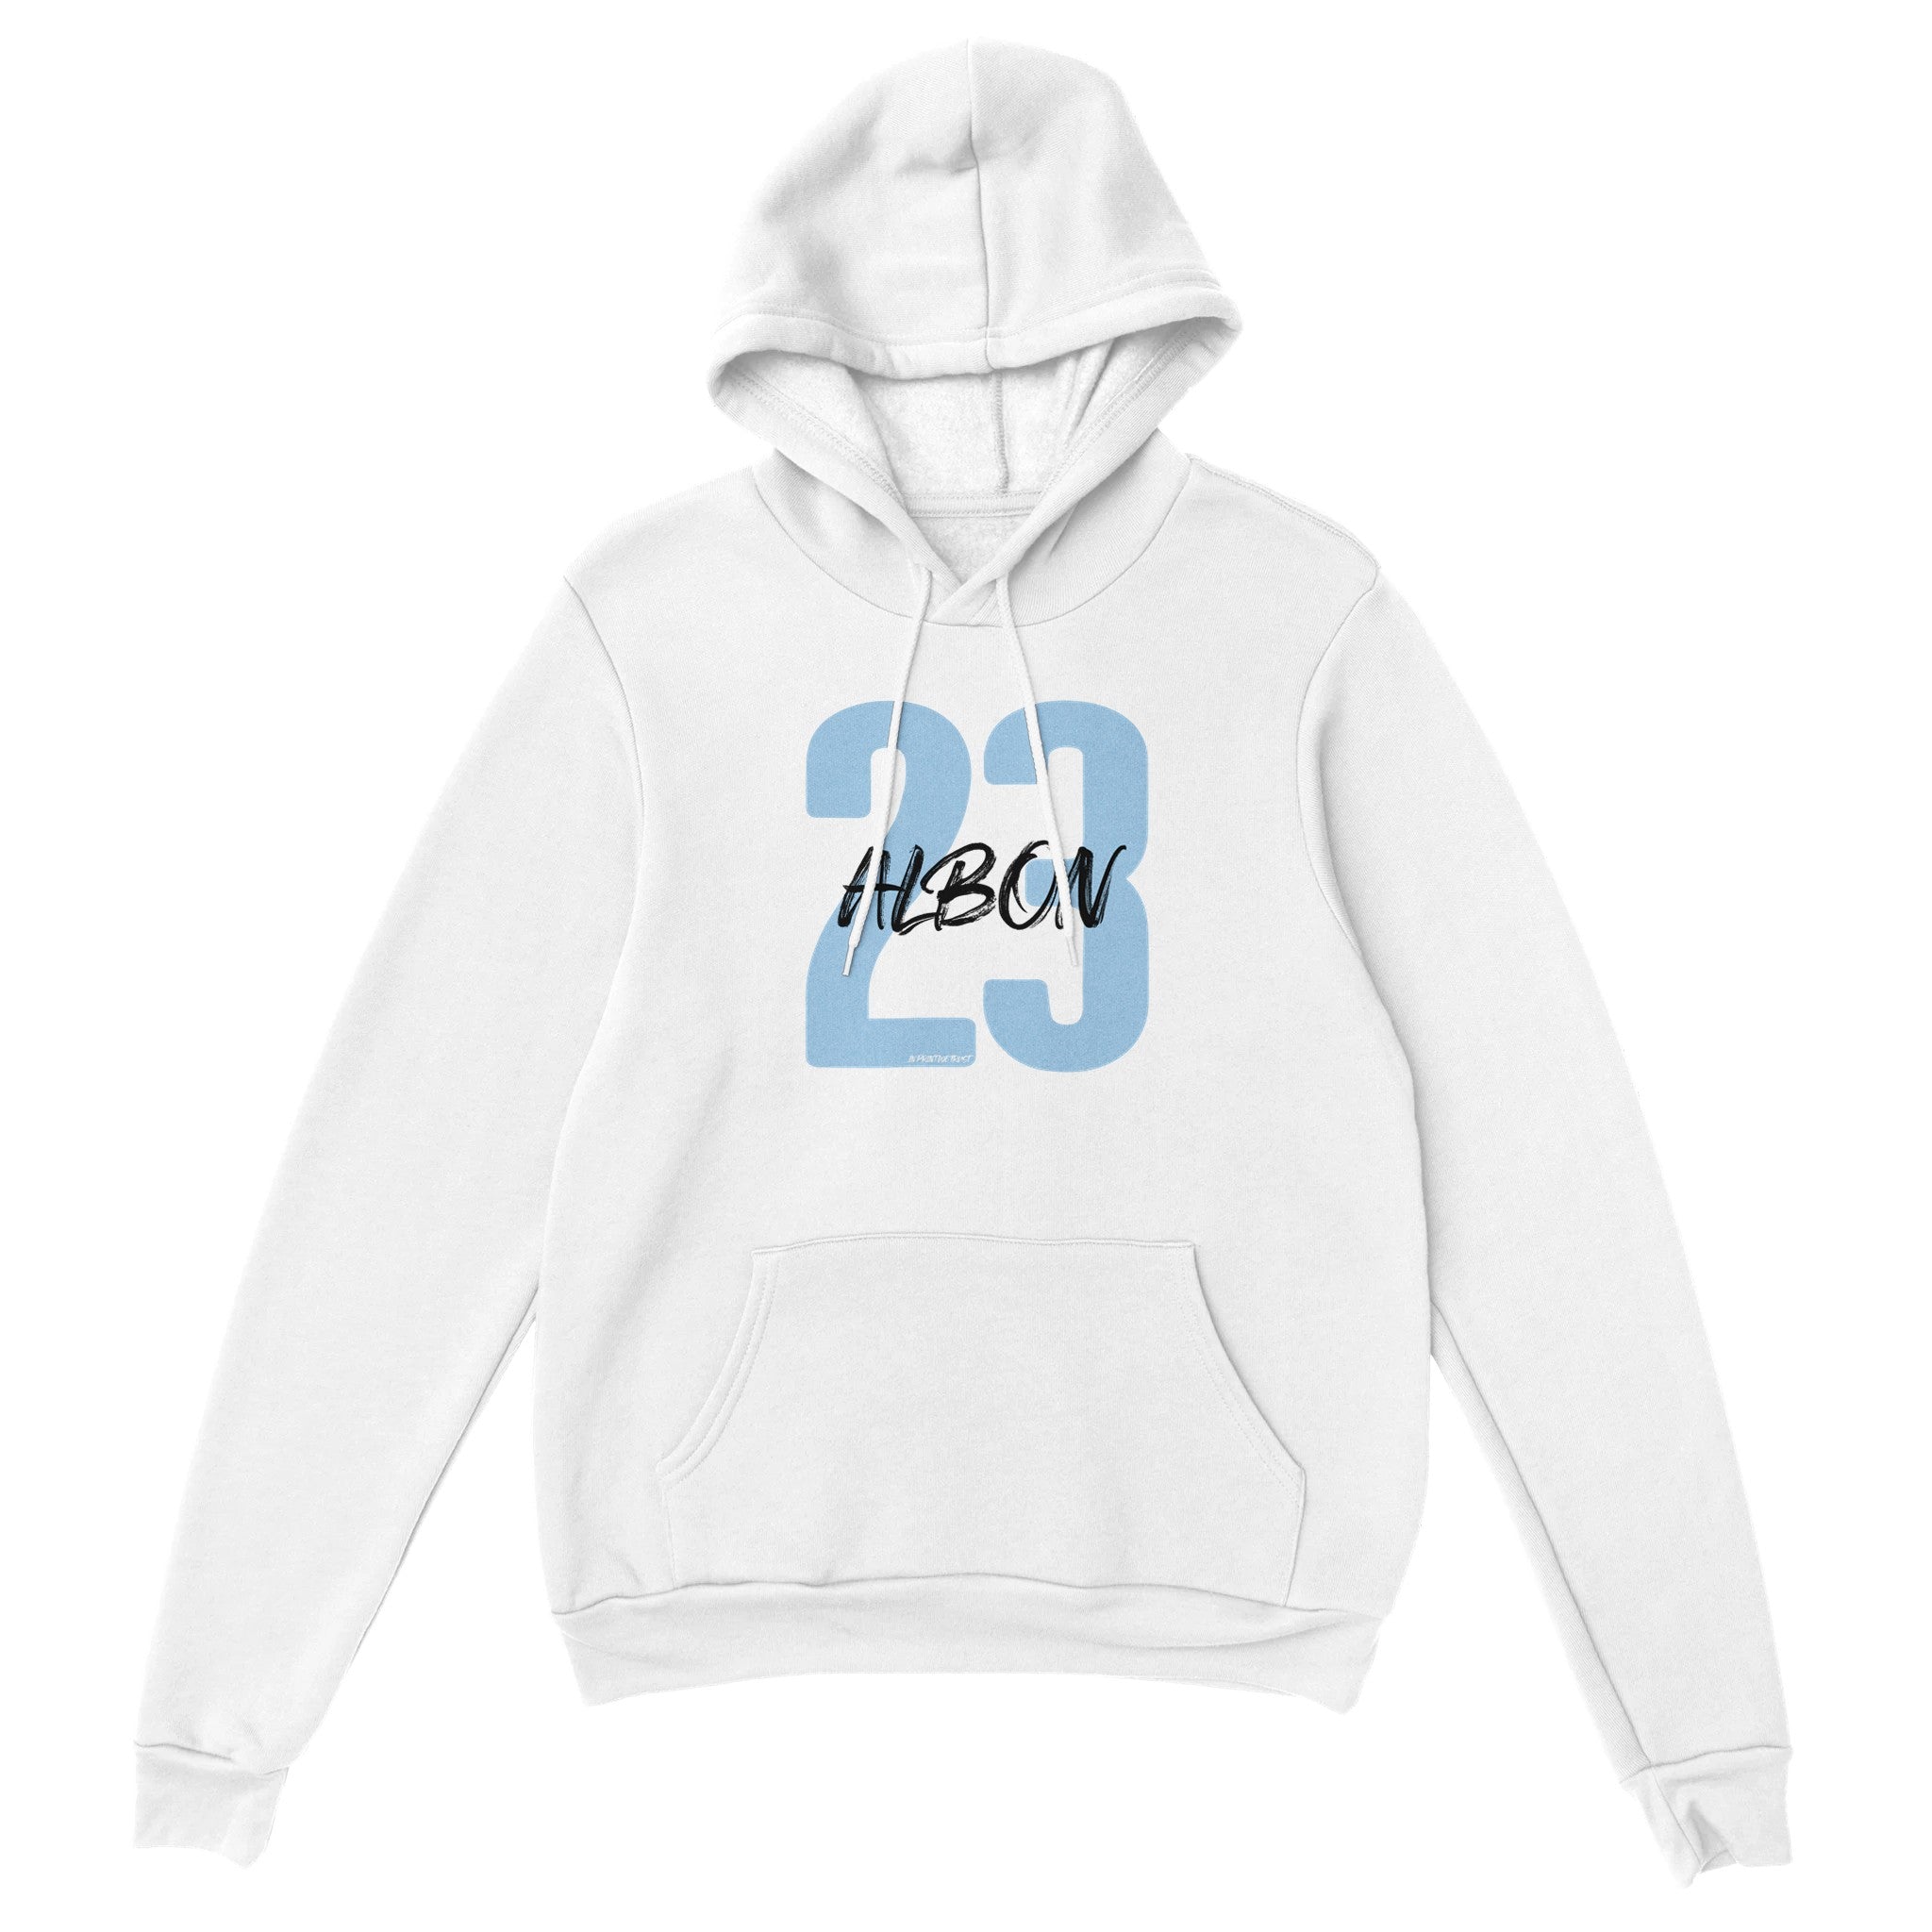 'Albon 23' hoodie - In Print We Trust